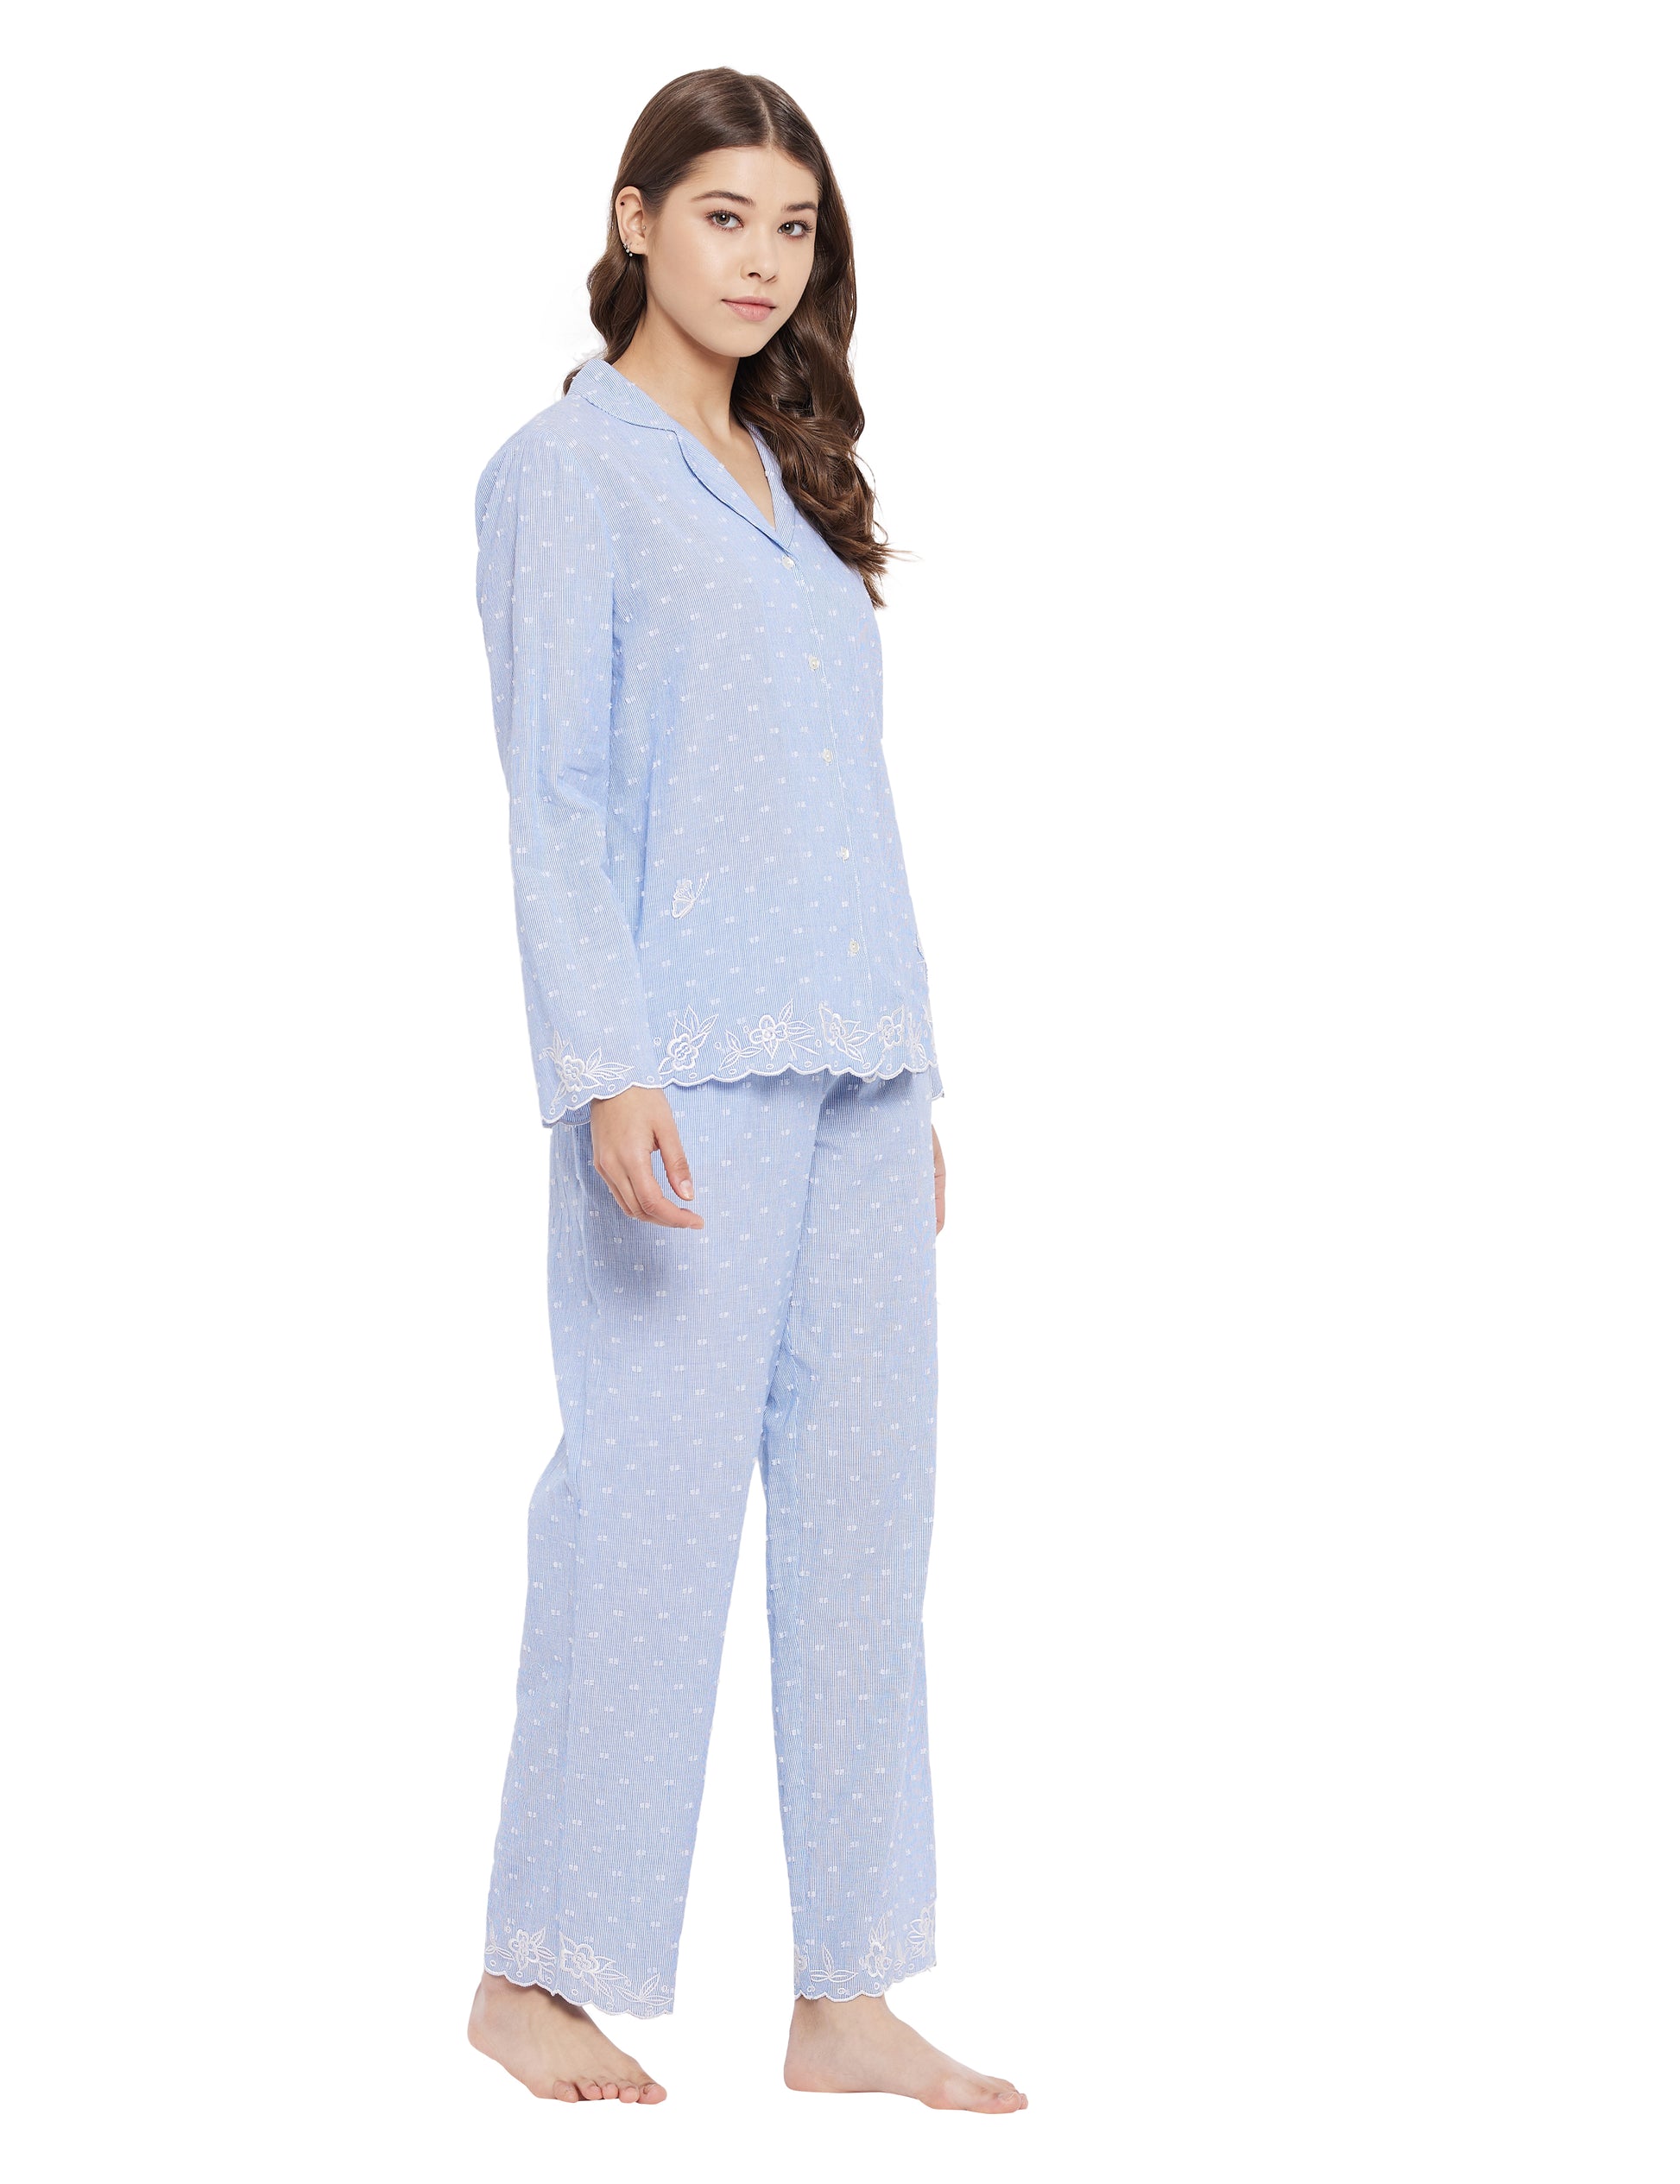 Annie Cotton Embroidery Pyjamas Set Pajamas 45.00 Indigo Paisley